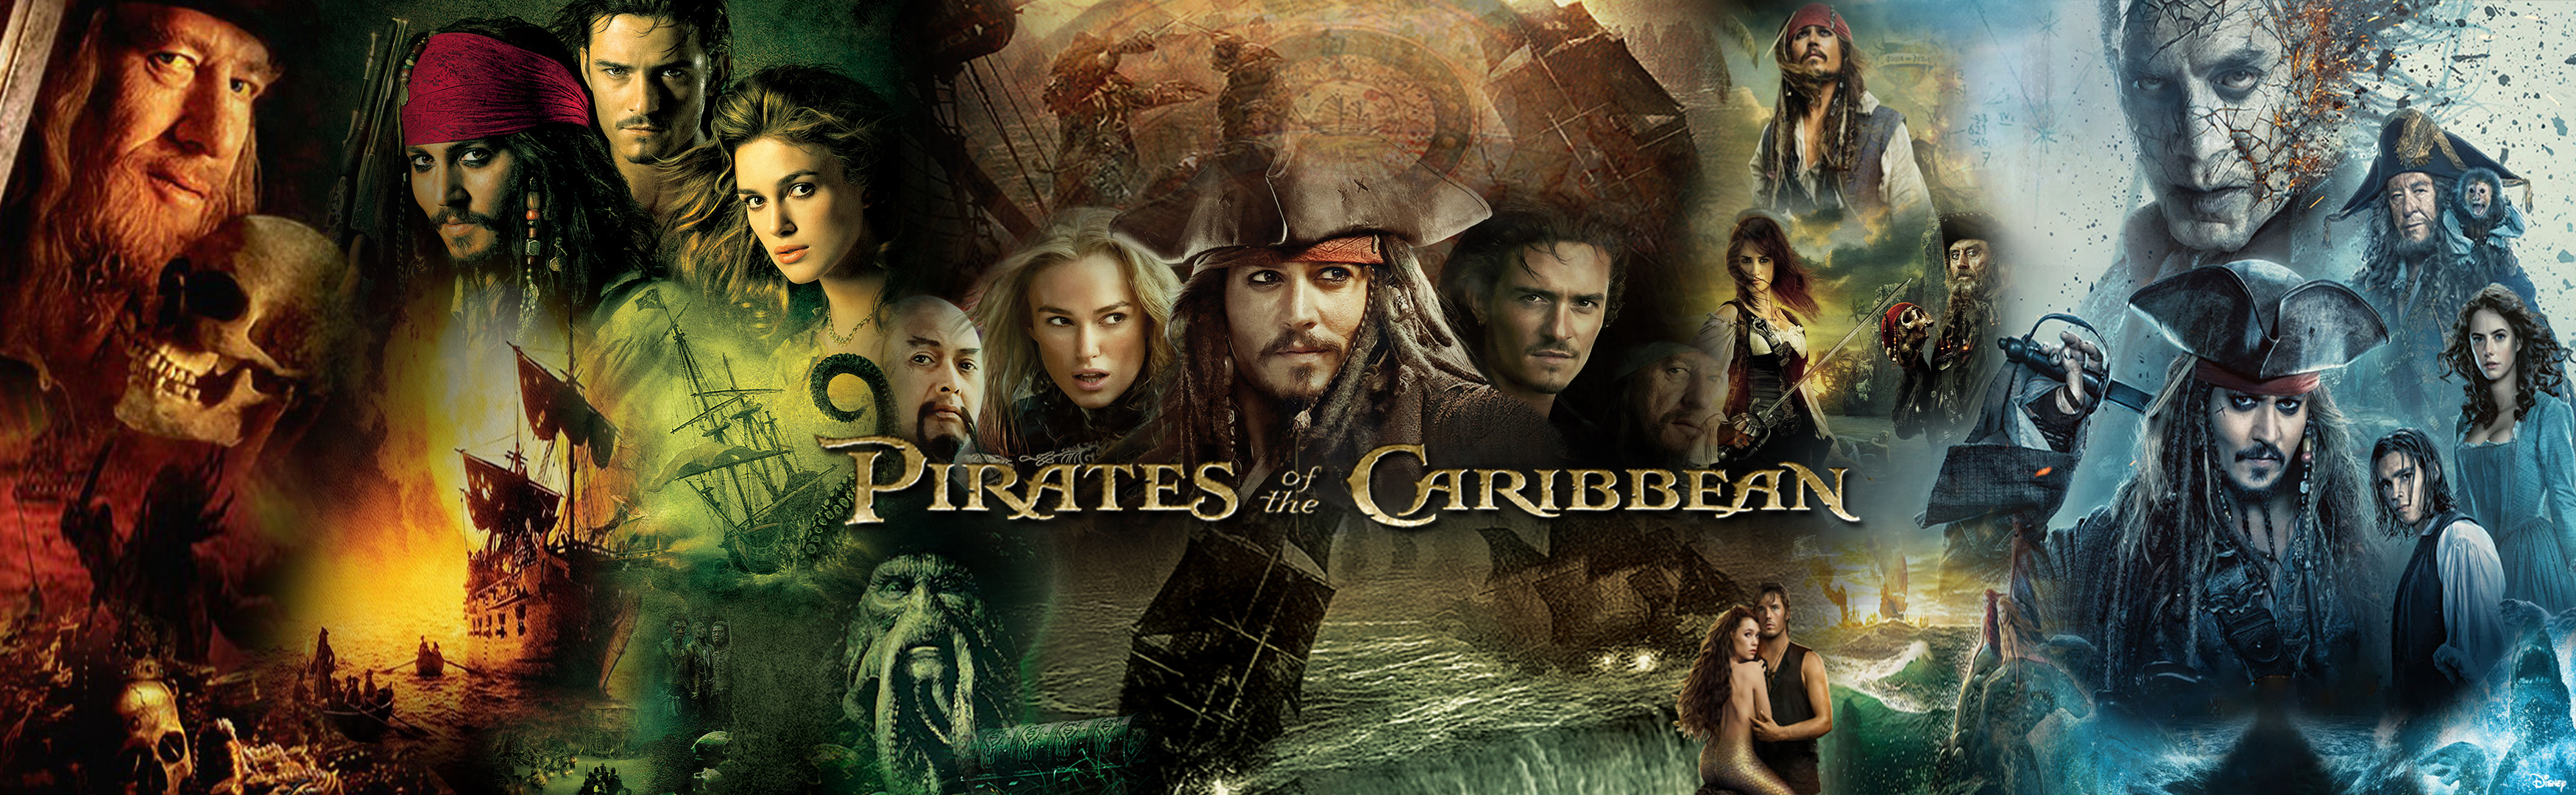 Пираты карибского моря сколько частей по порядку. Пираты Карибского моря 1 обложка. Пираты Карибского моря коллаж. Пираты Карибского моря баннер. Пираты Карибского моря афиша.